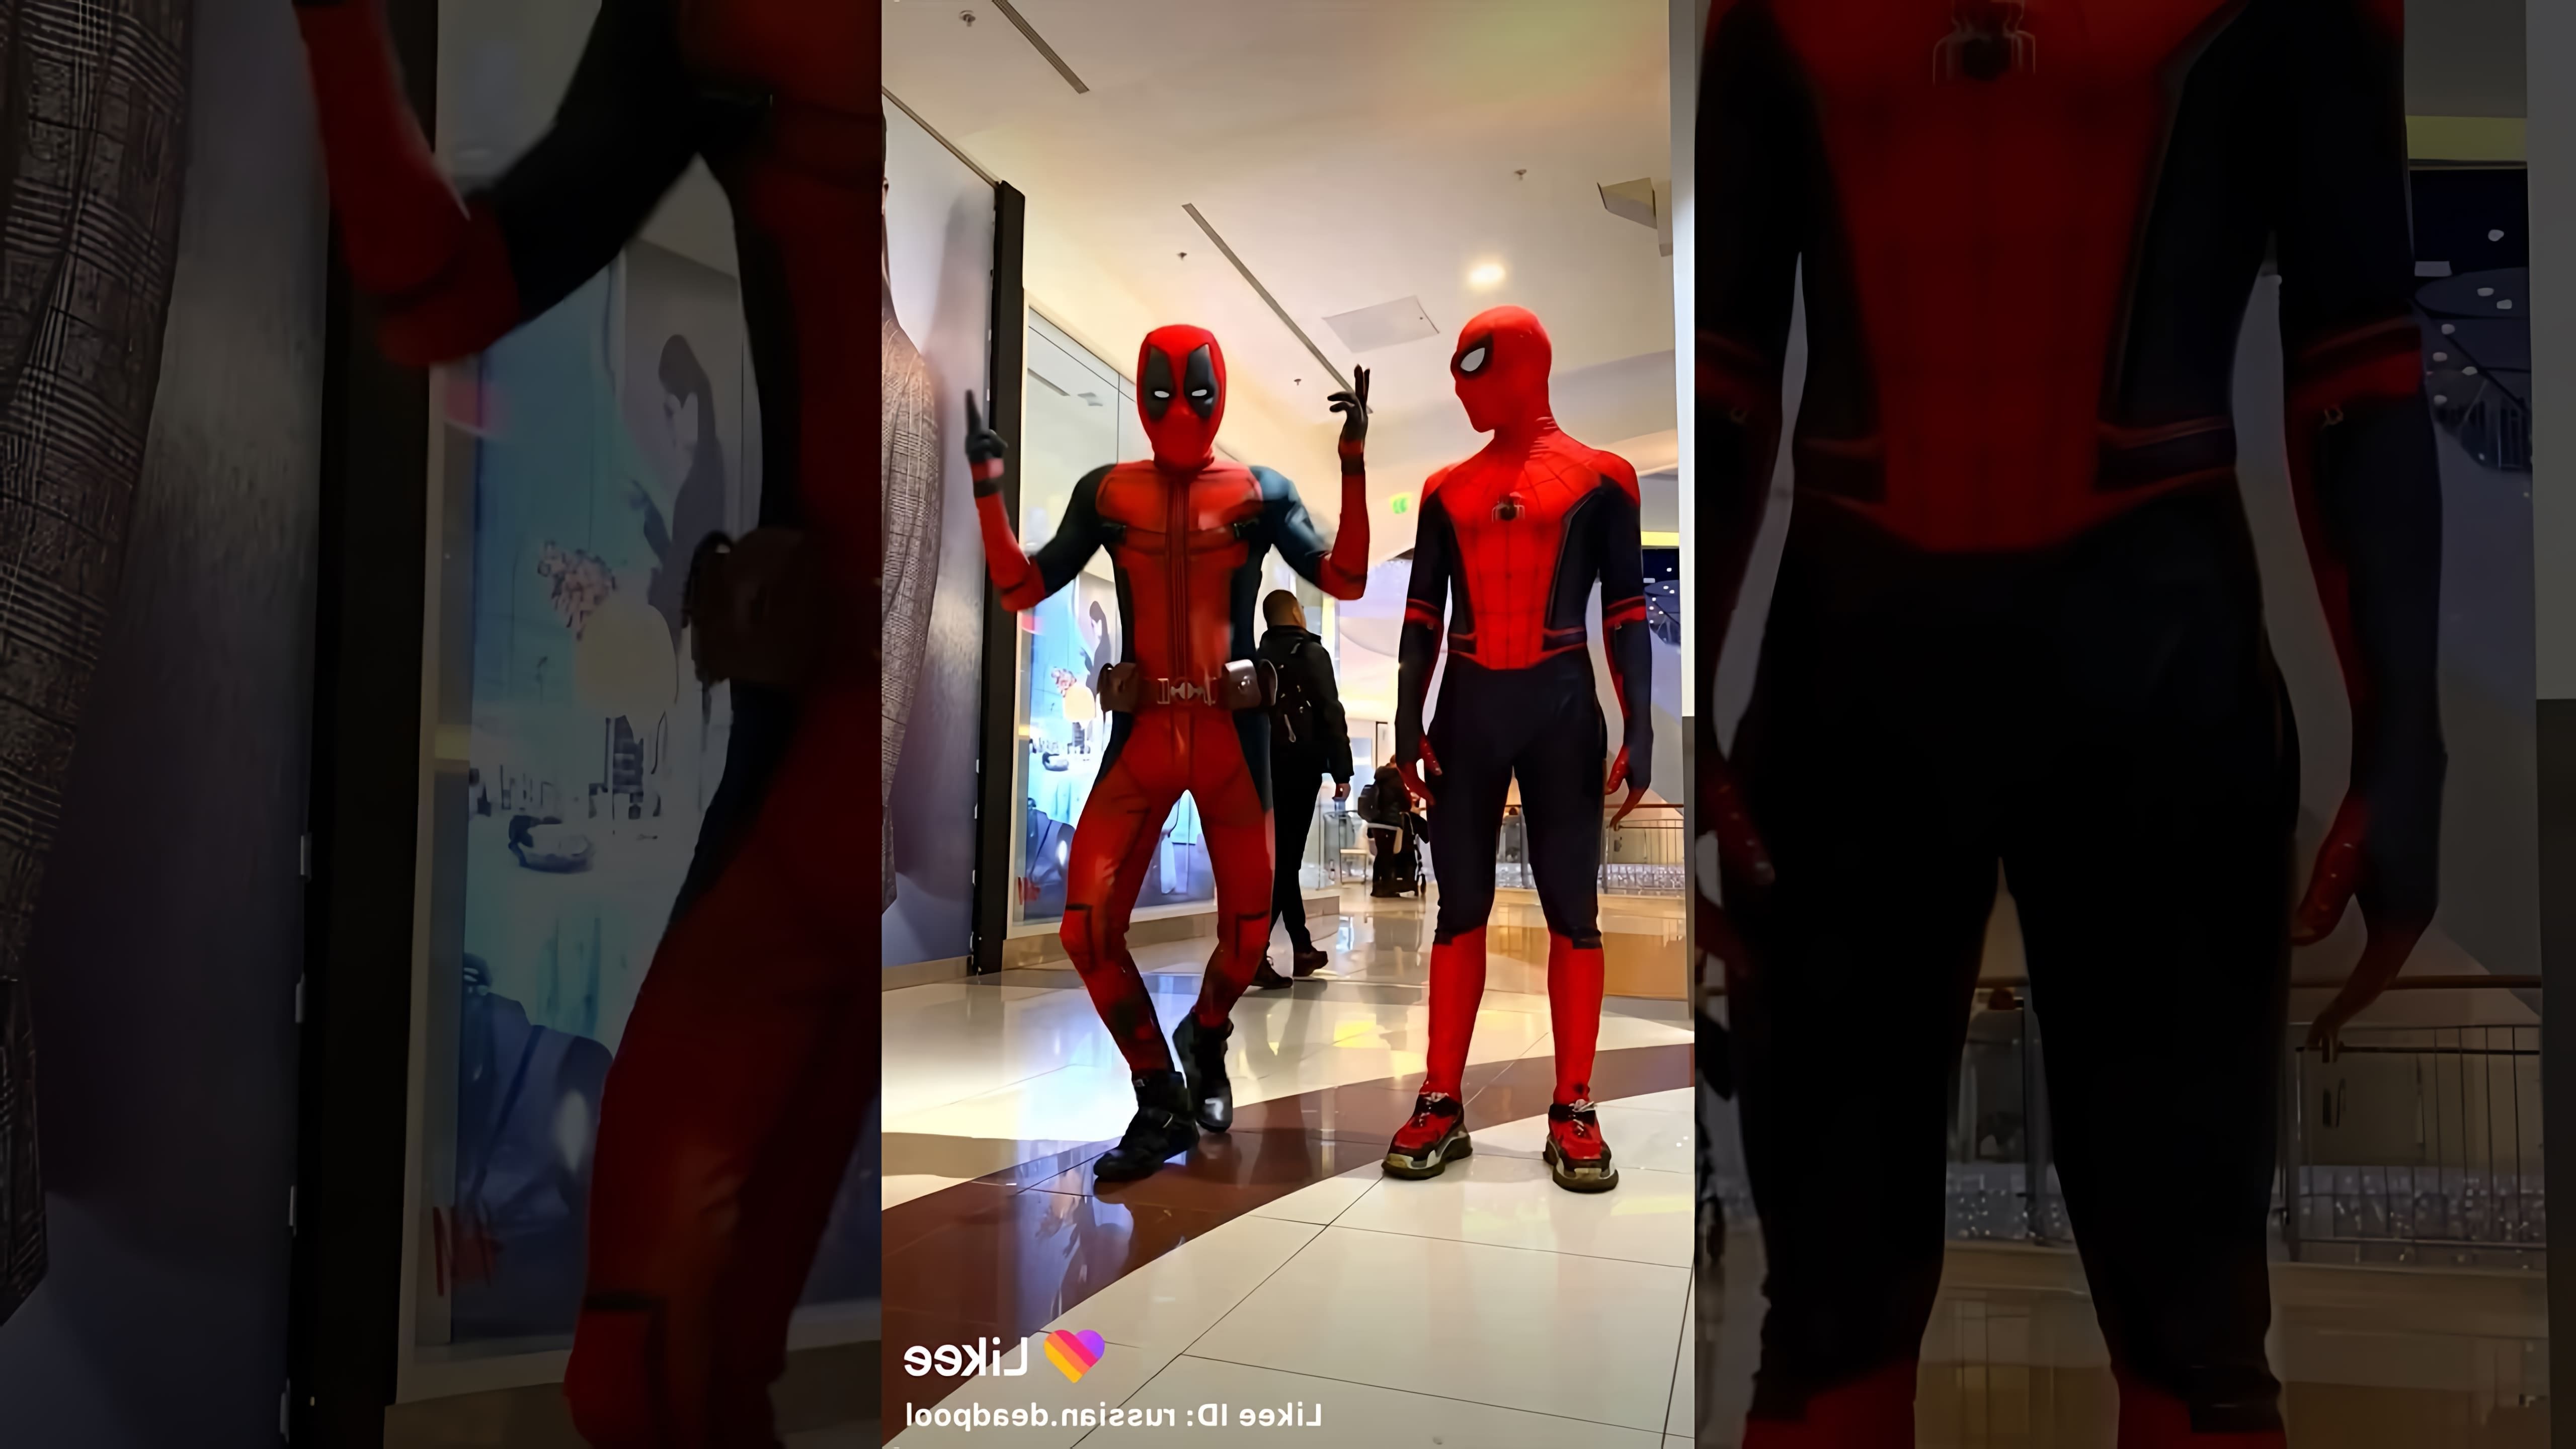 Человек-паук, известный своими супергеройскими способностями, в этом видео-ролике танцует под музыку симпа